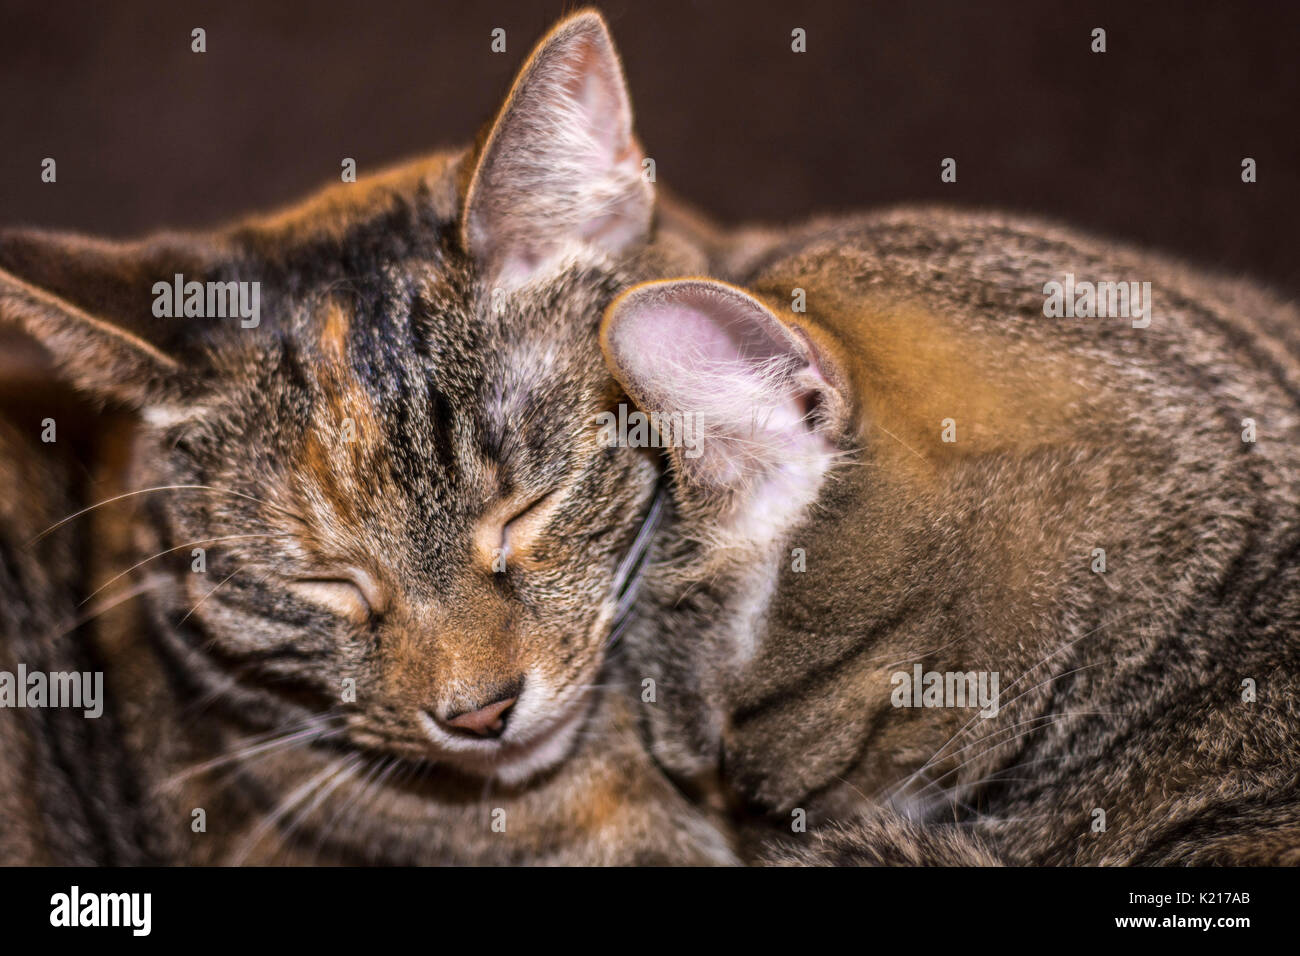 Two Sleepy Tabby Cats Stock Photo